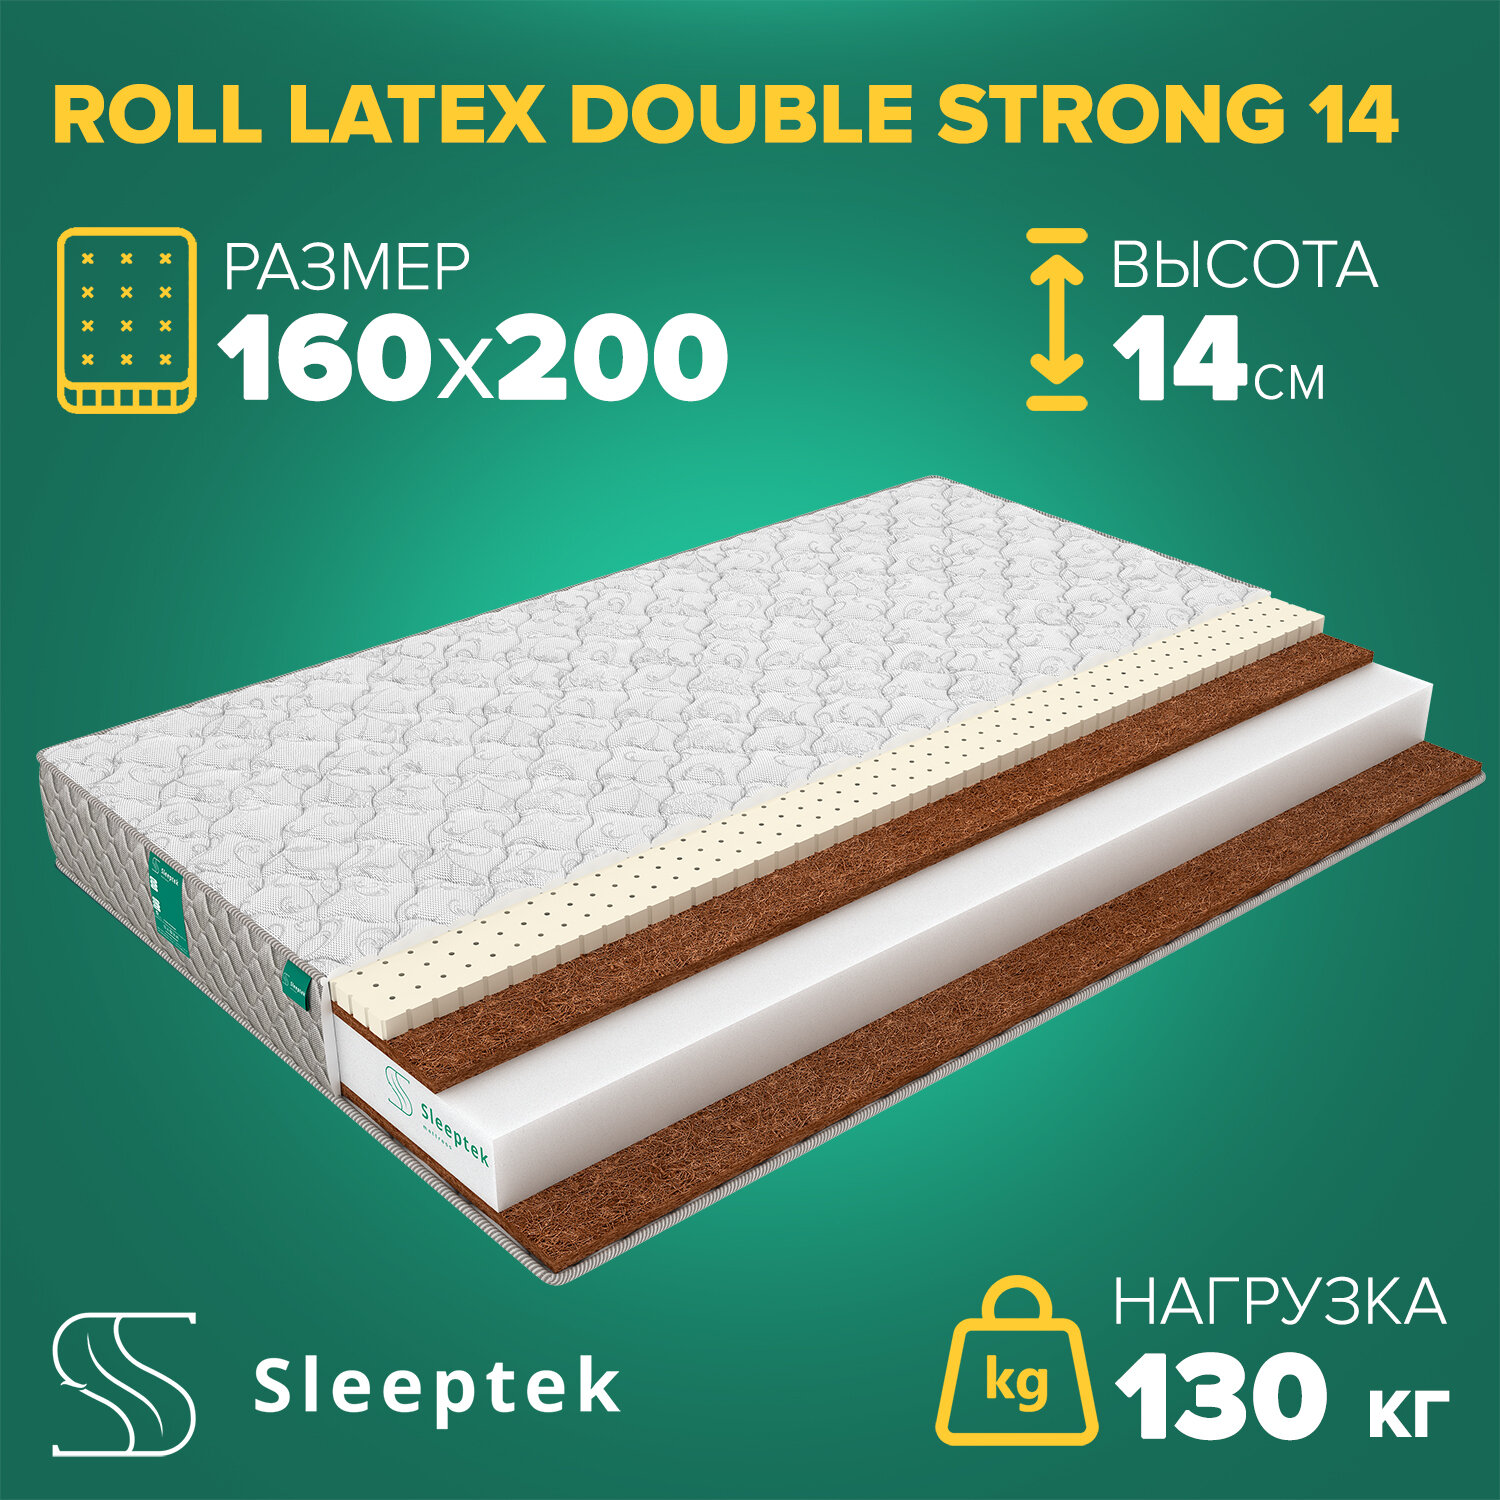 Матрас Sleeptek Roll Latex DoubleStrong 14 160х200